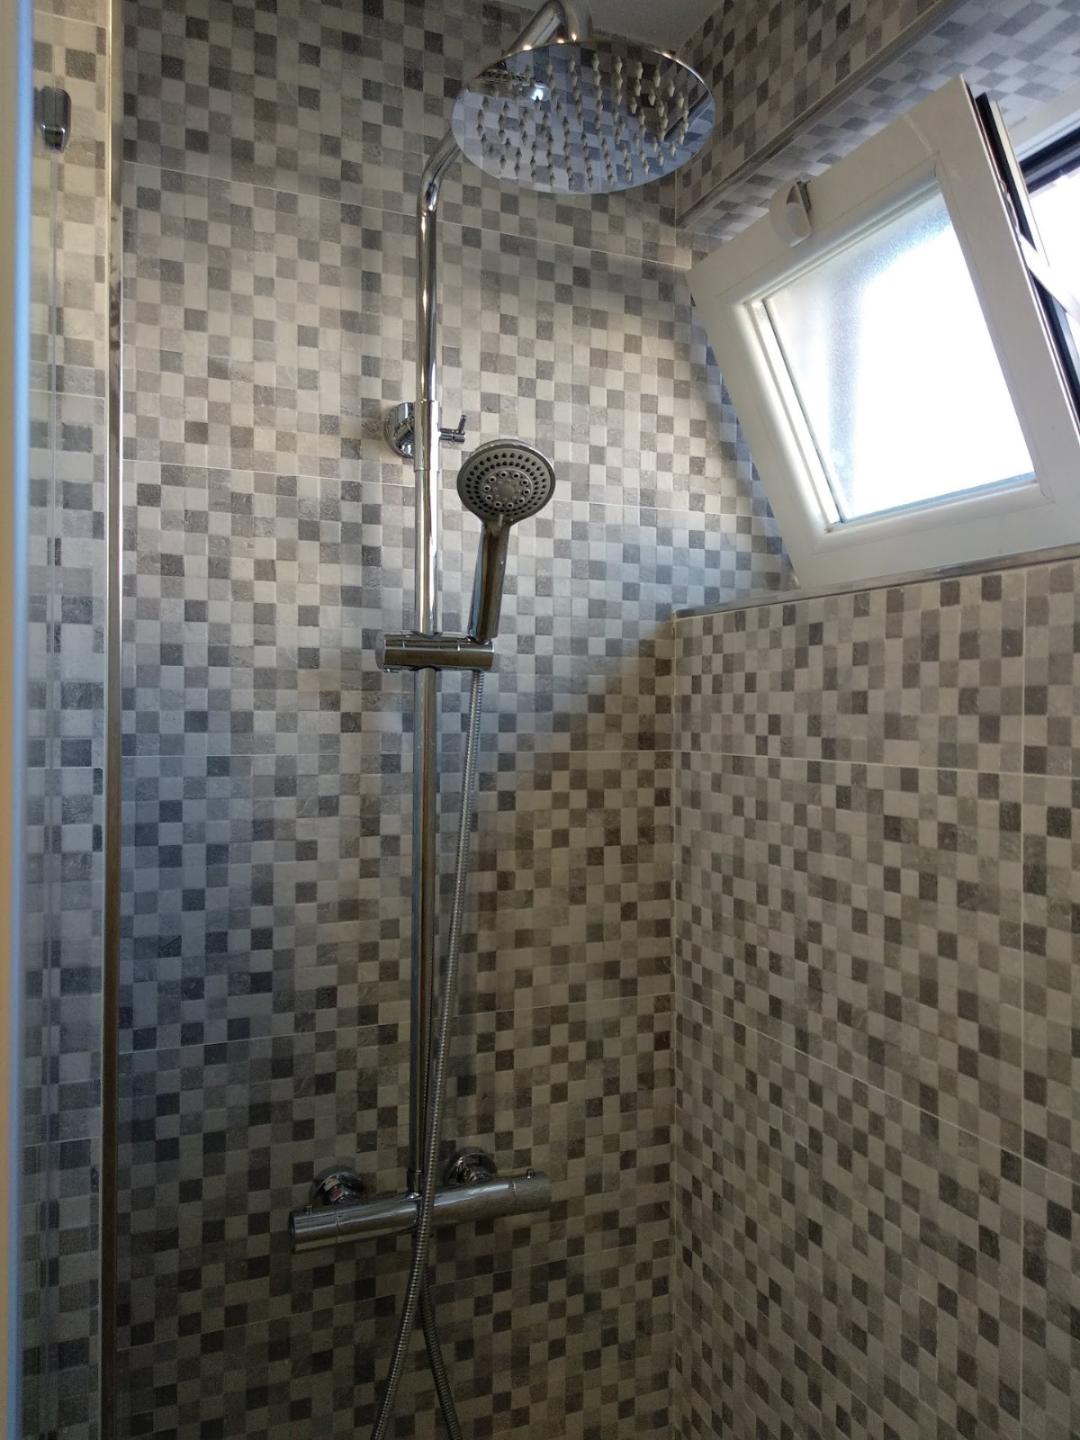 Construcciones Adrian: Alicatado de pared dentro de la ducha